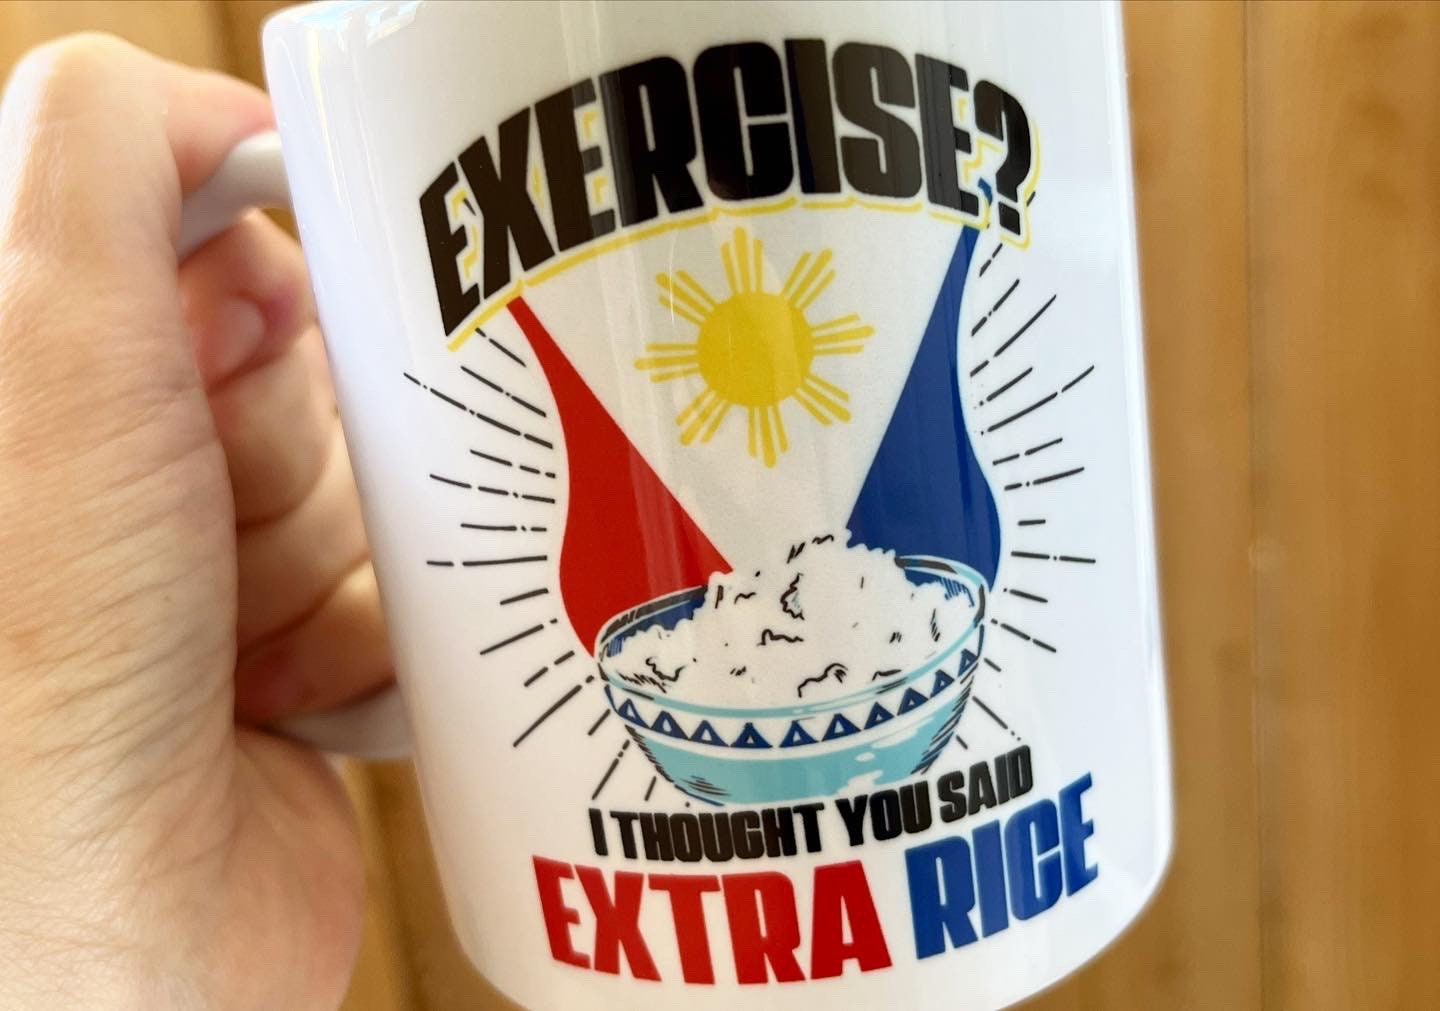 Pinoy Inspired Mug, Philippines Novelty Mug Gift Ideas- 11 oz.